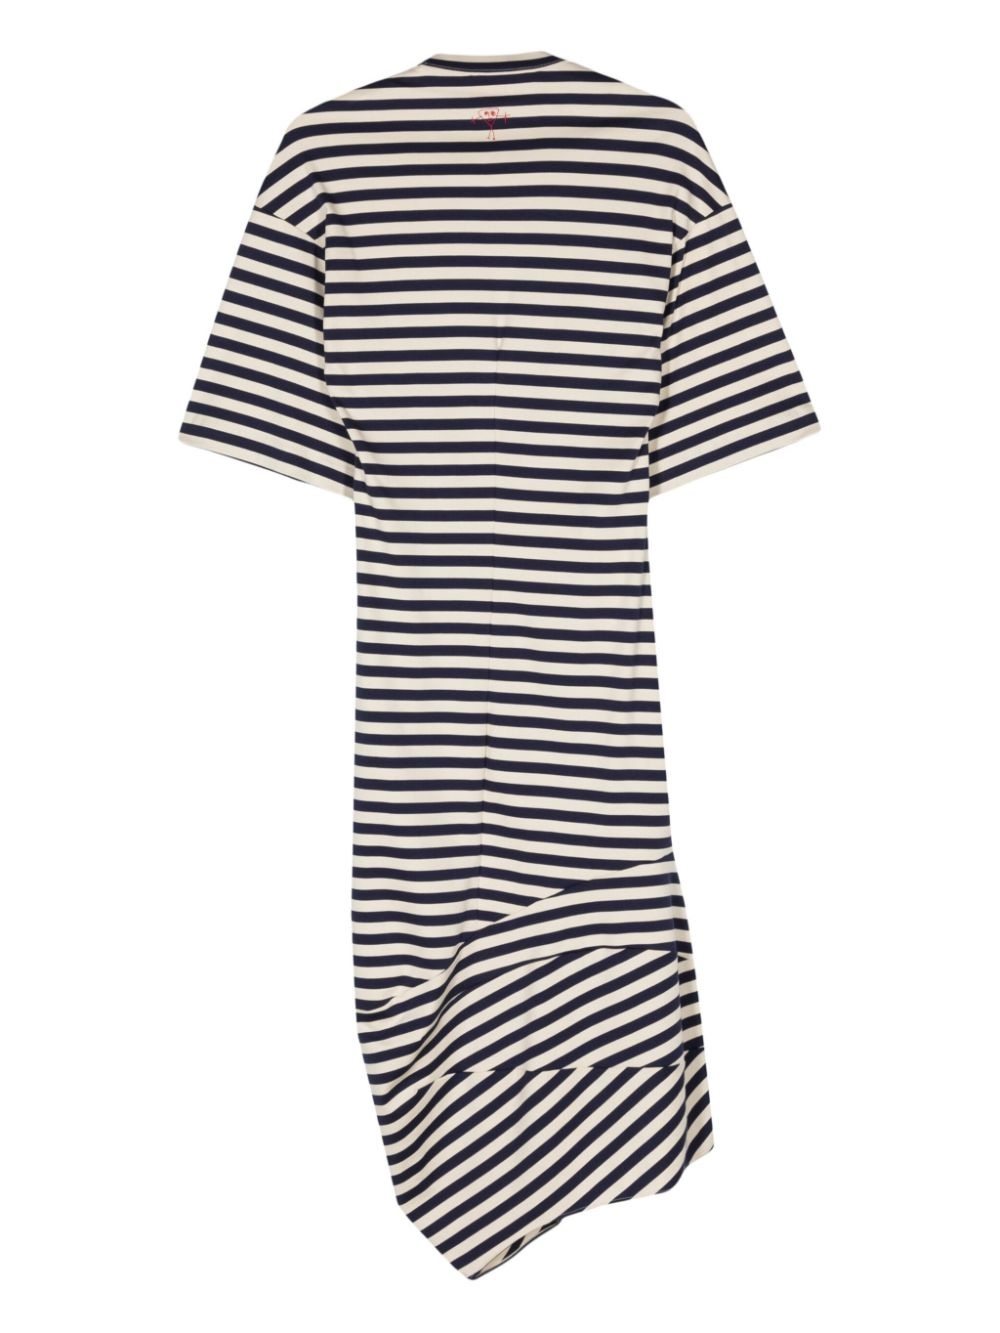 asymmetric striped T-shirt dress - 2